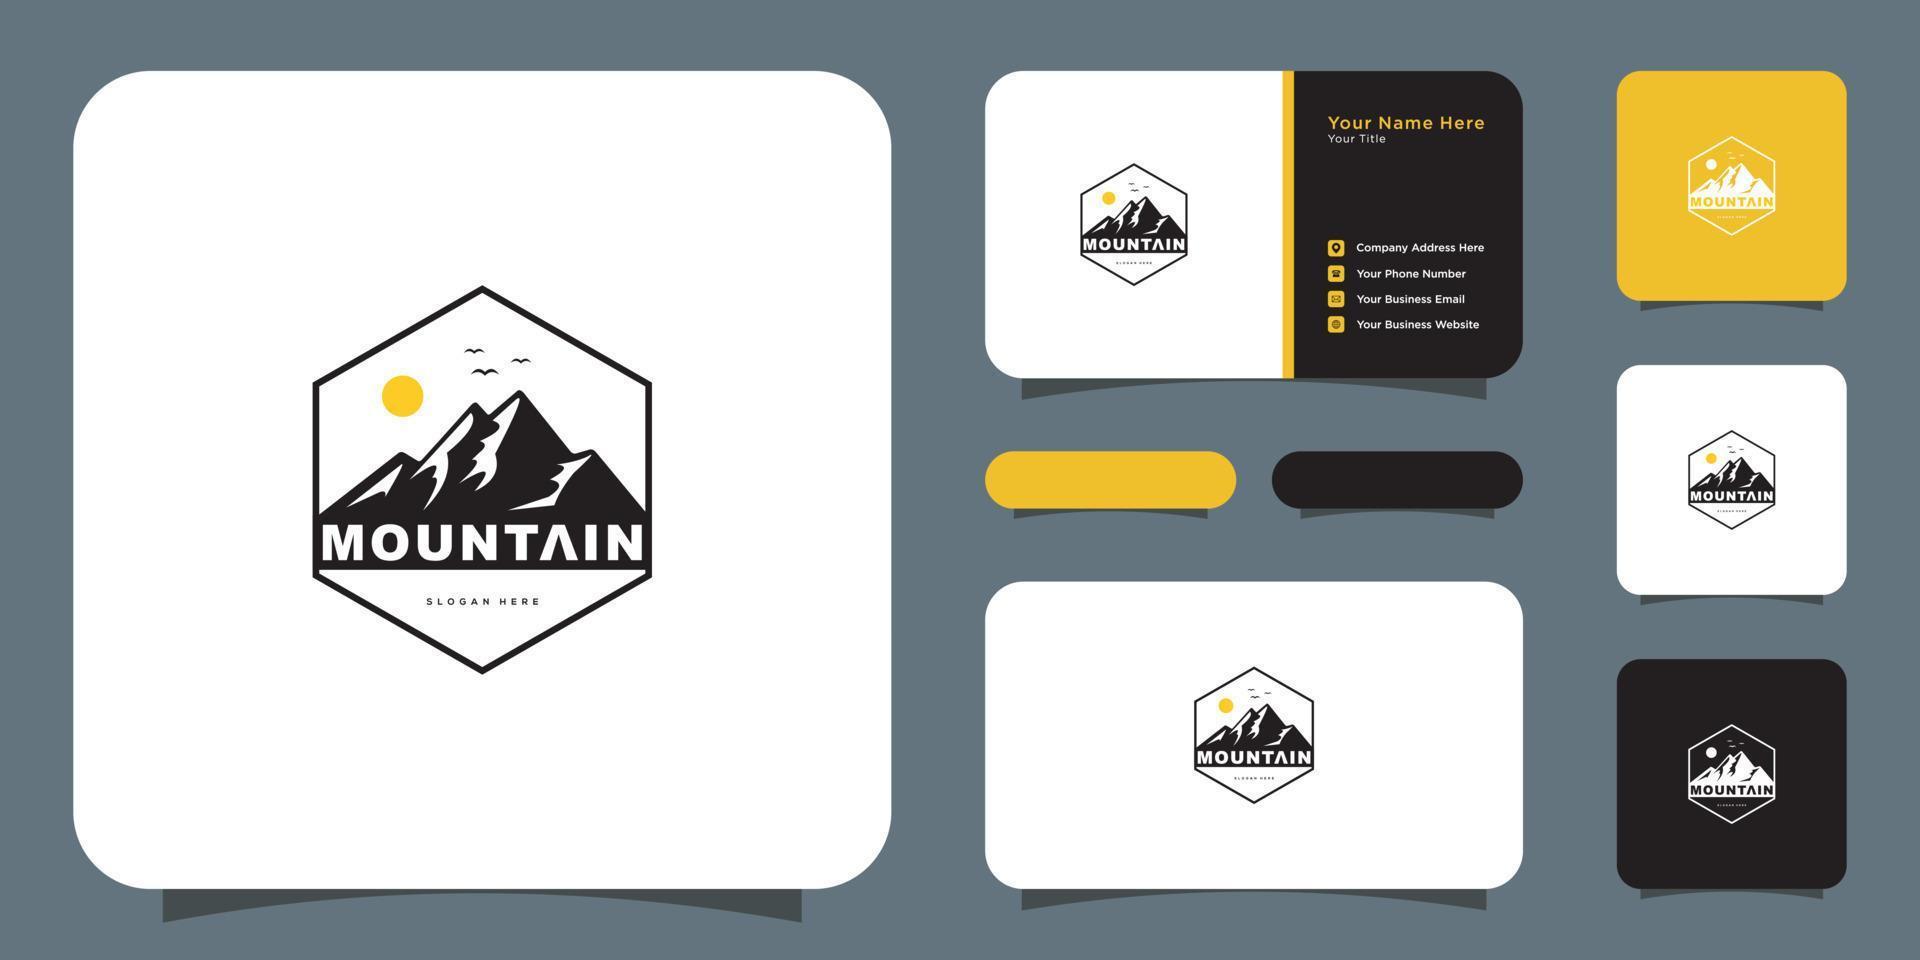 mountain logo vector design and business card